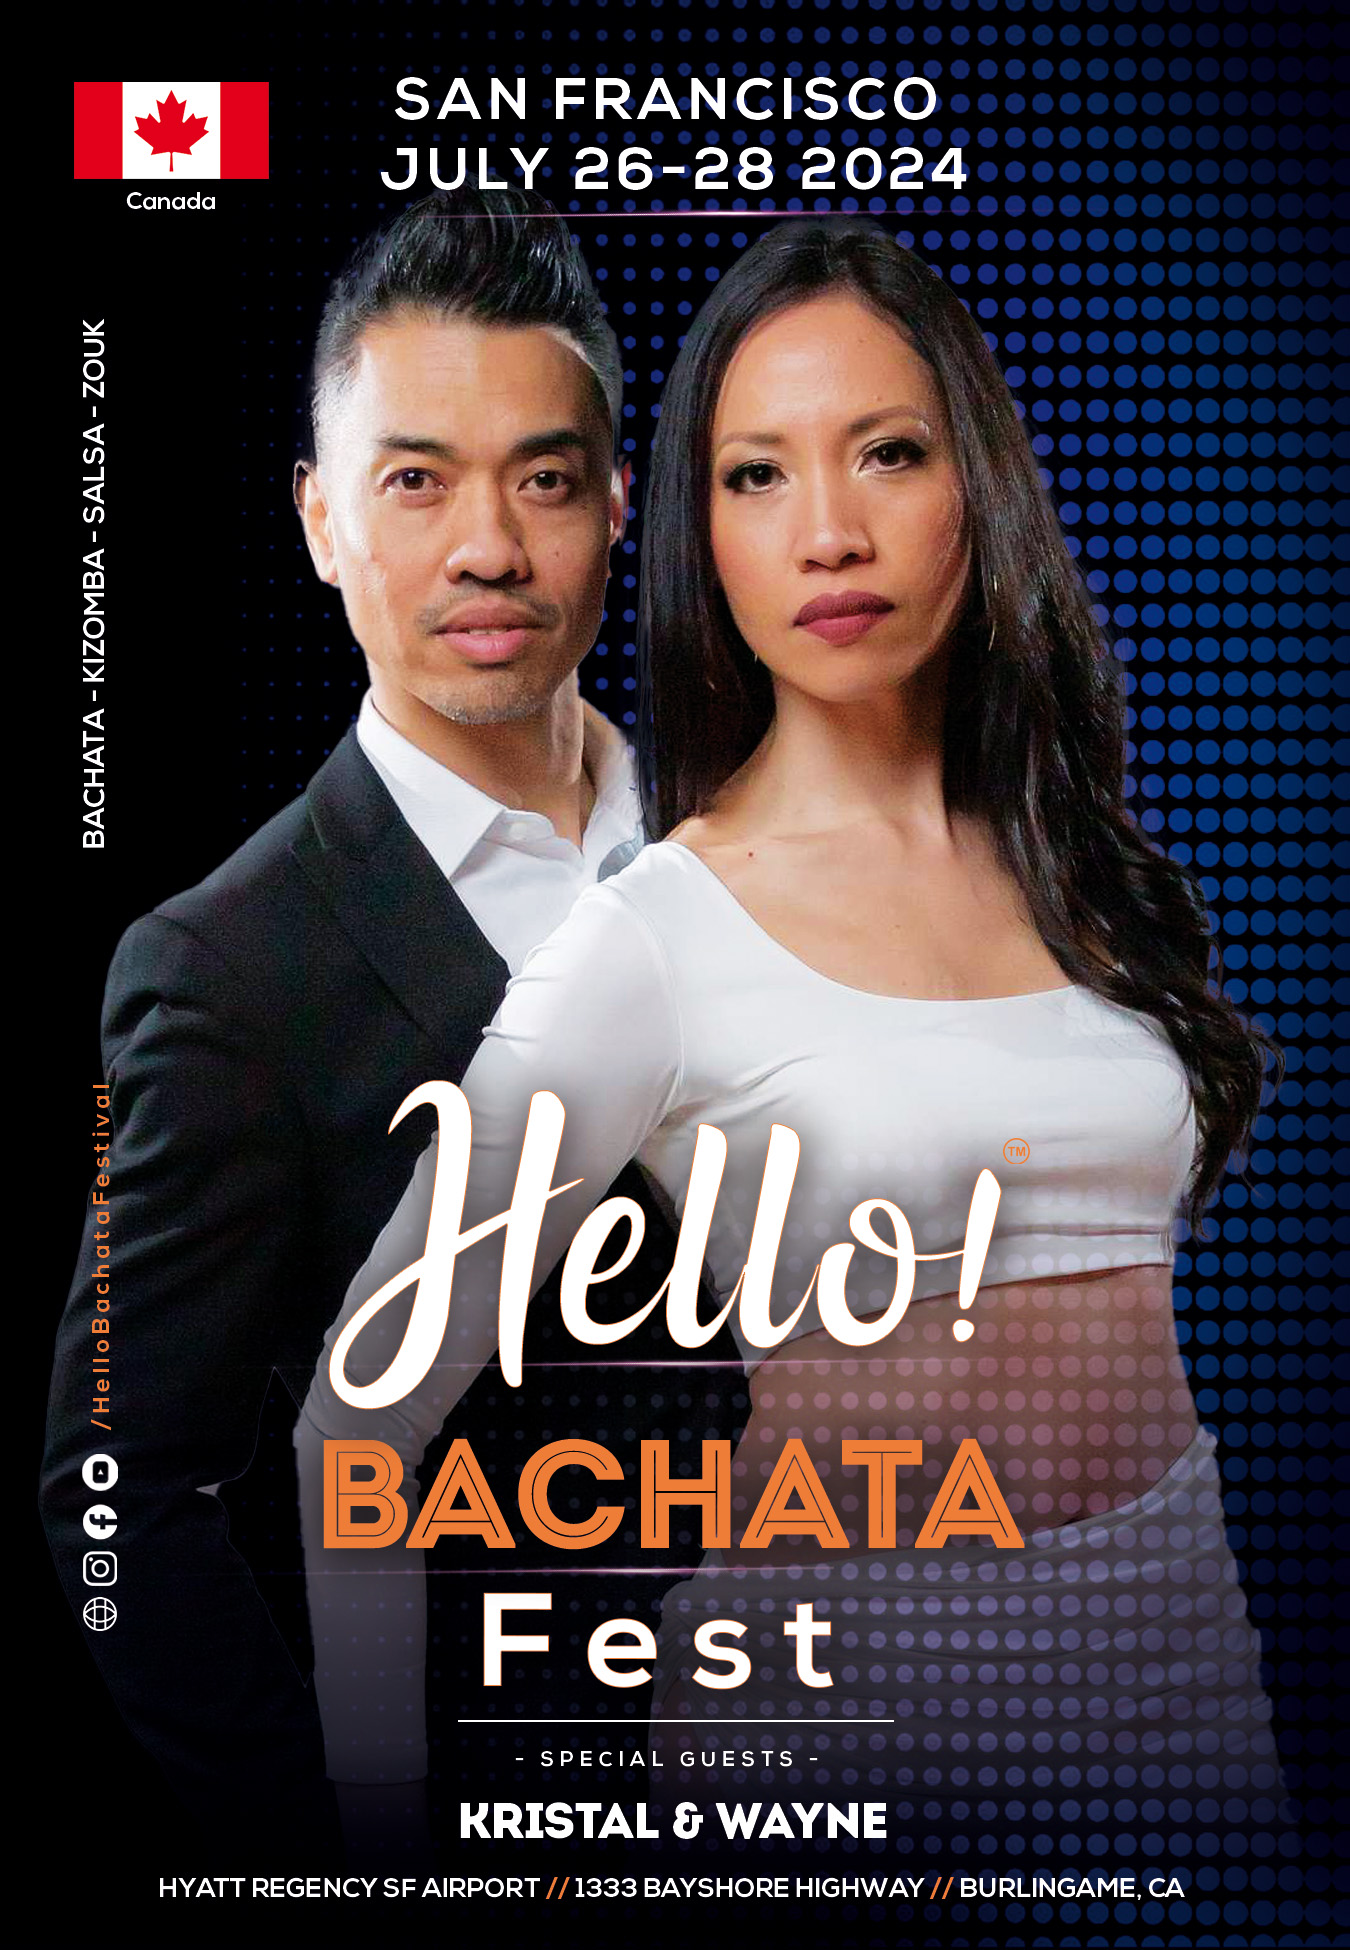 Hello! Bachata Fest - Krystal & Wayne - Canada - Bachata